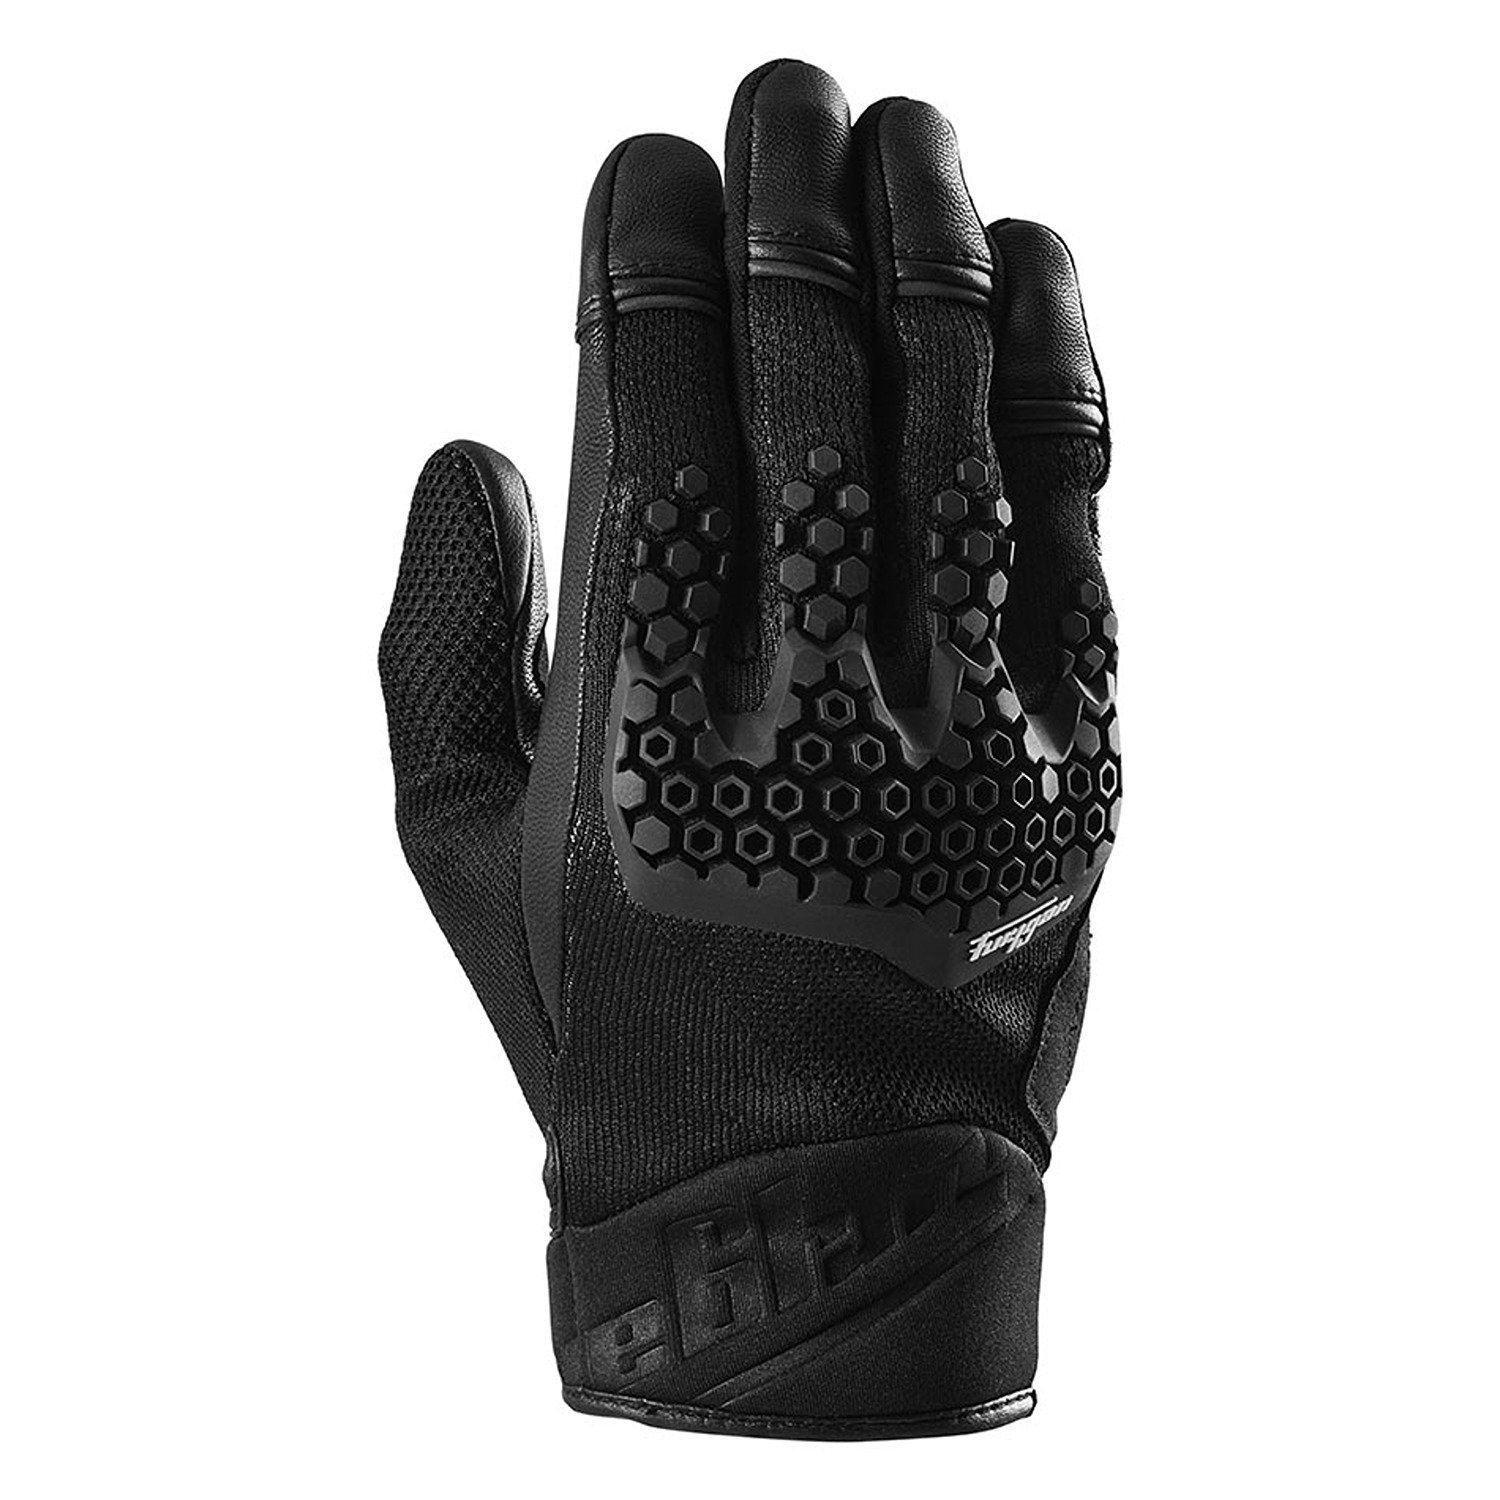 Image of Furygan Jack Gloves Black Size L EN